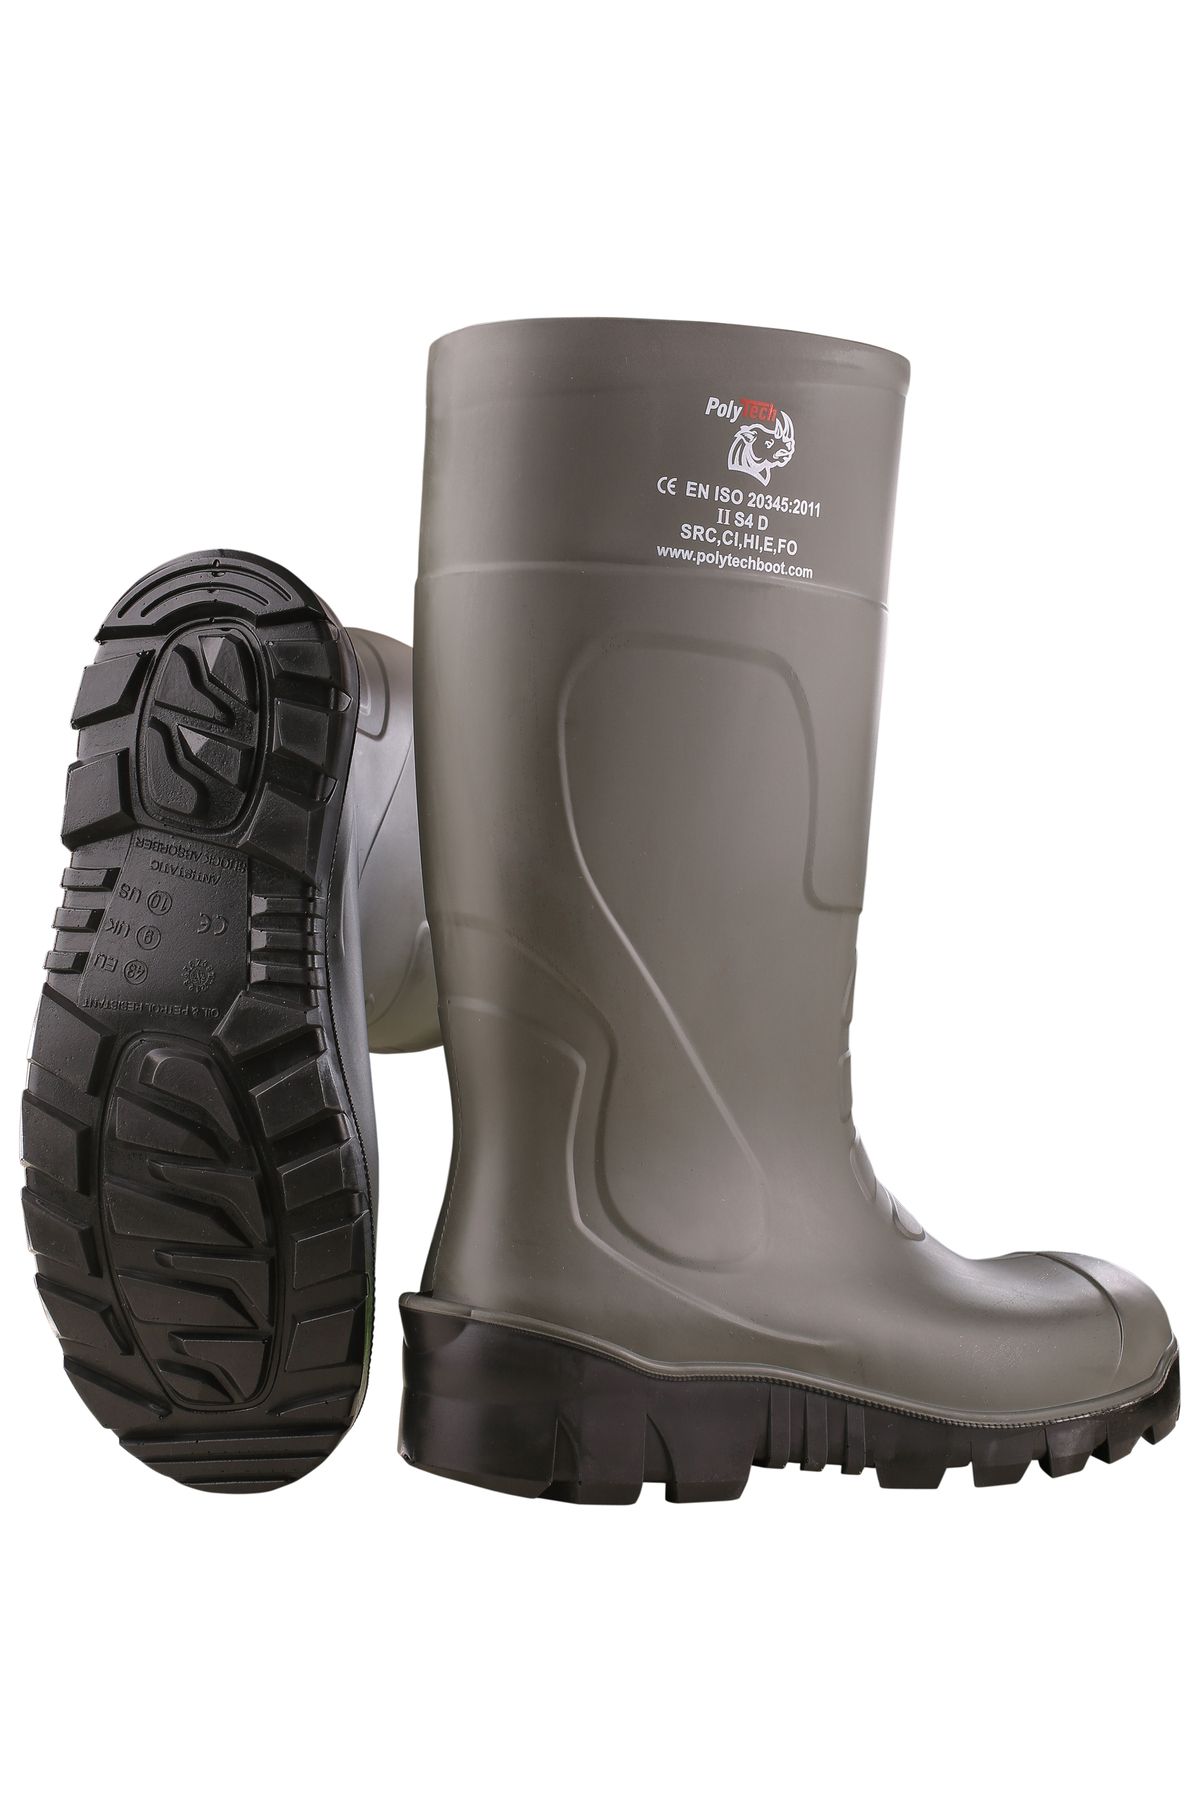 POLYTECH Boot S5 Çelik Burunlu + Çelik Tabanlı Poliüretan Çizme, PU Çizme